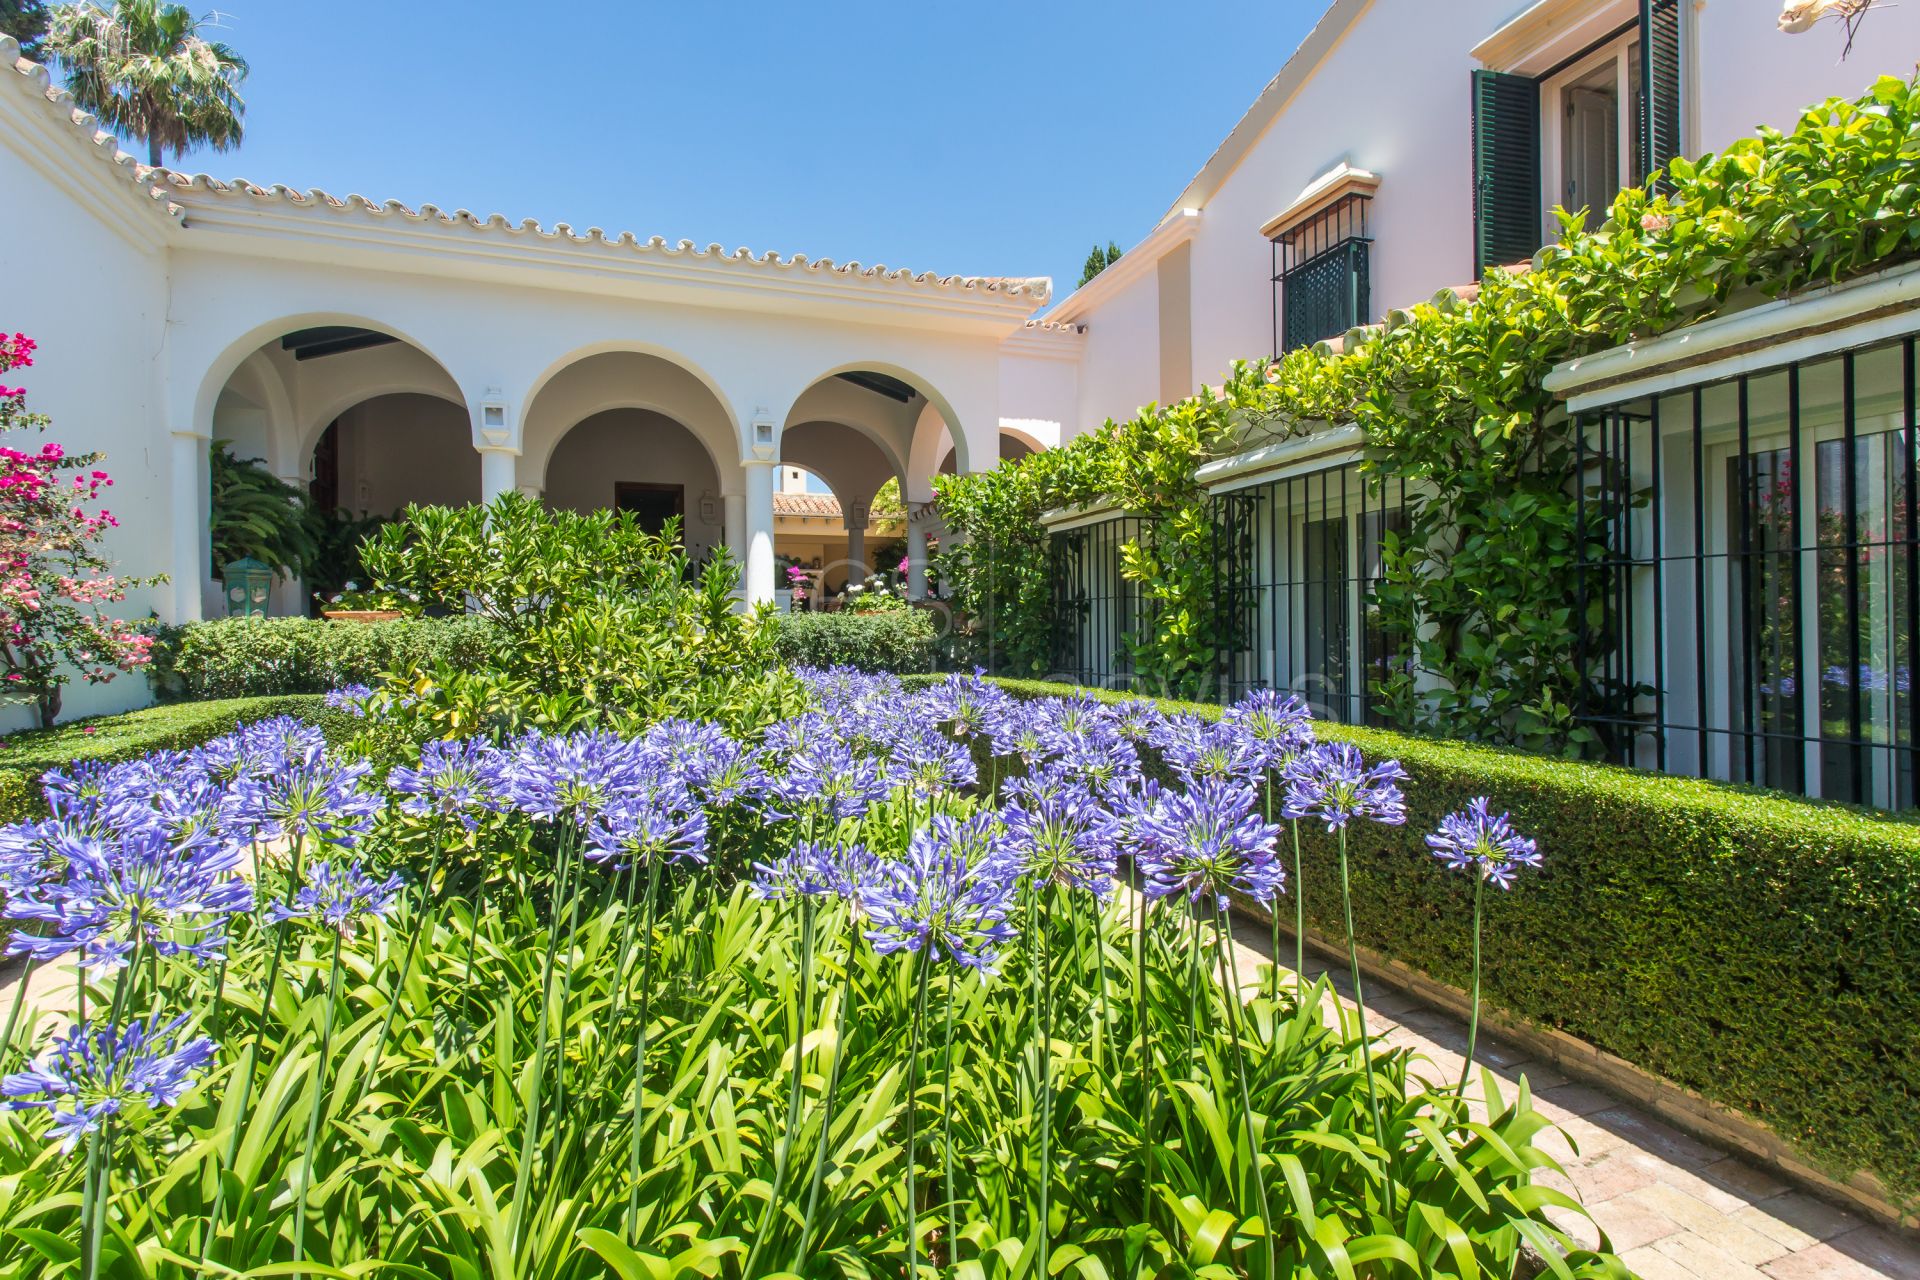 EXCLUSIVA Impresionante villa de estilo andaluz en primera línea del campo de golf